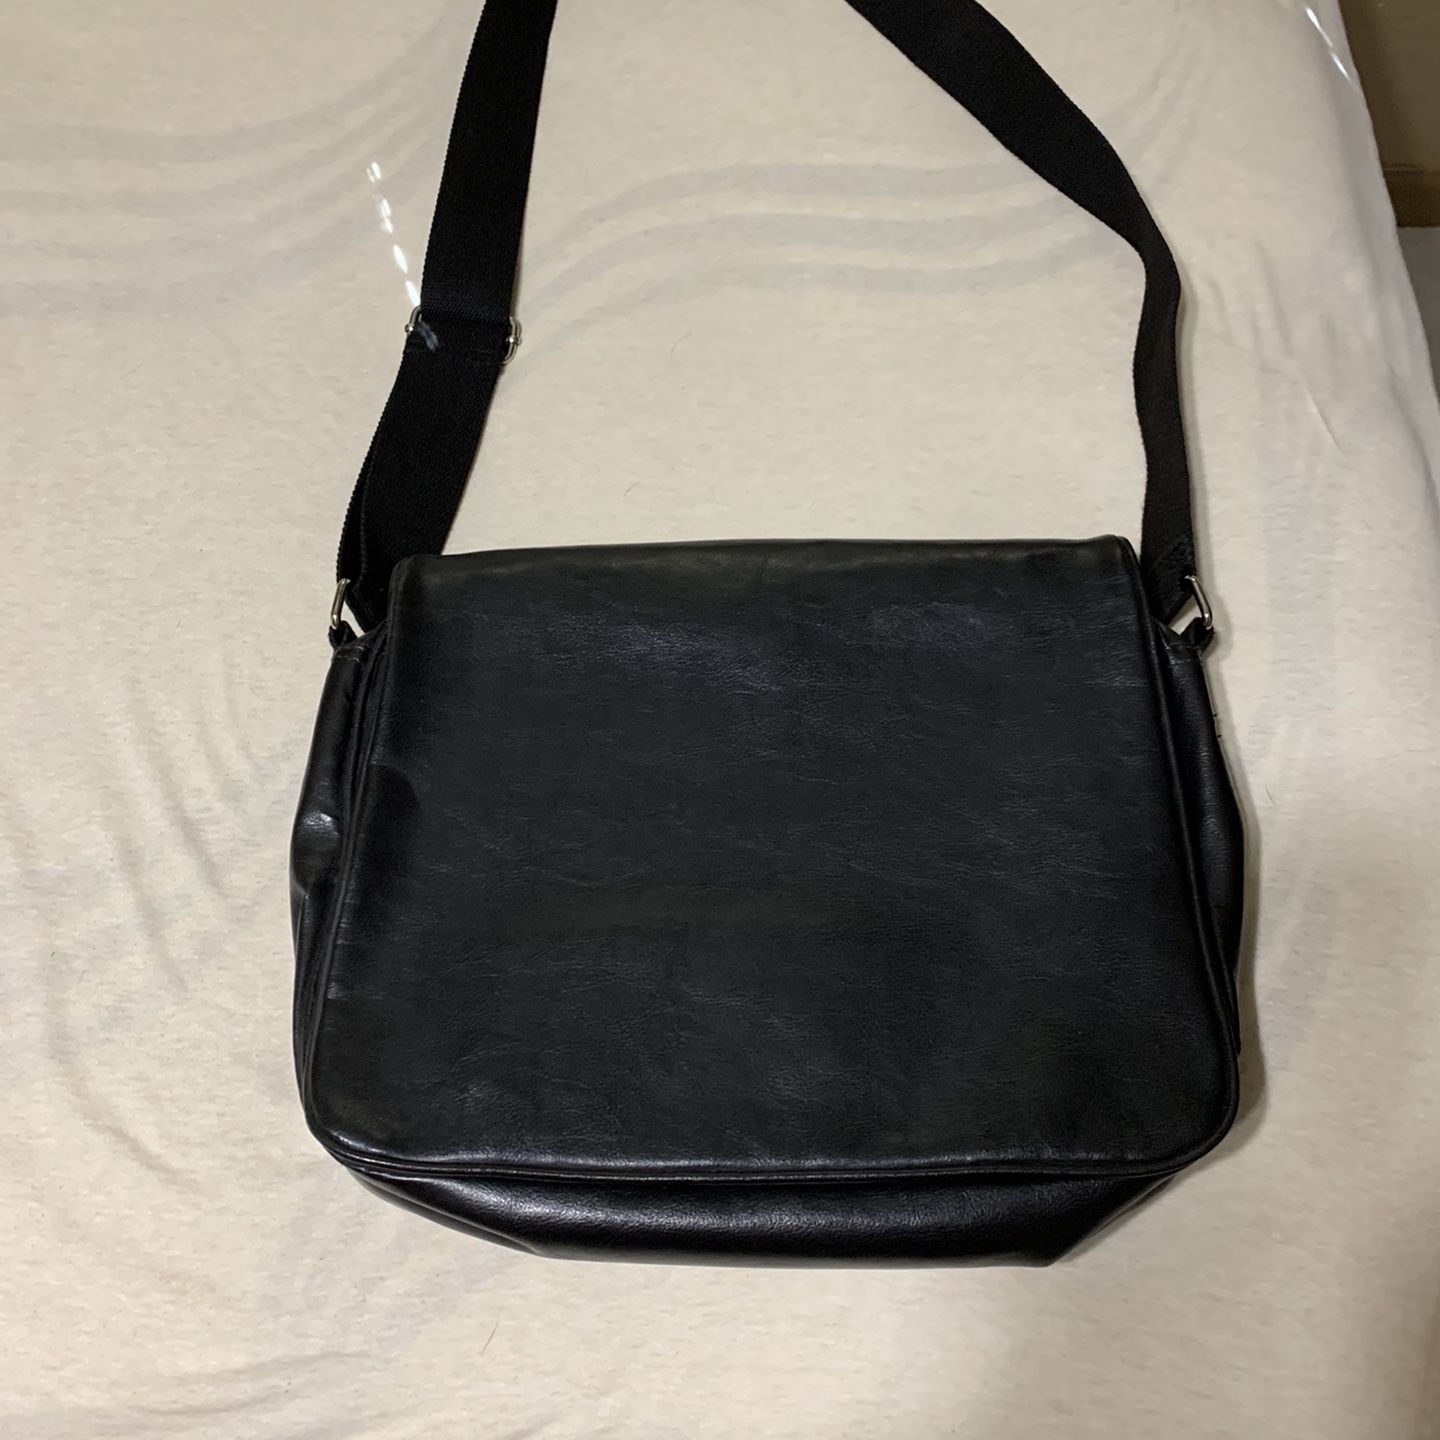 Genuine black leather messenger bag